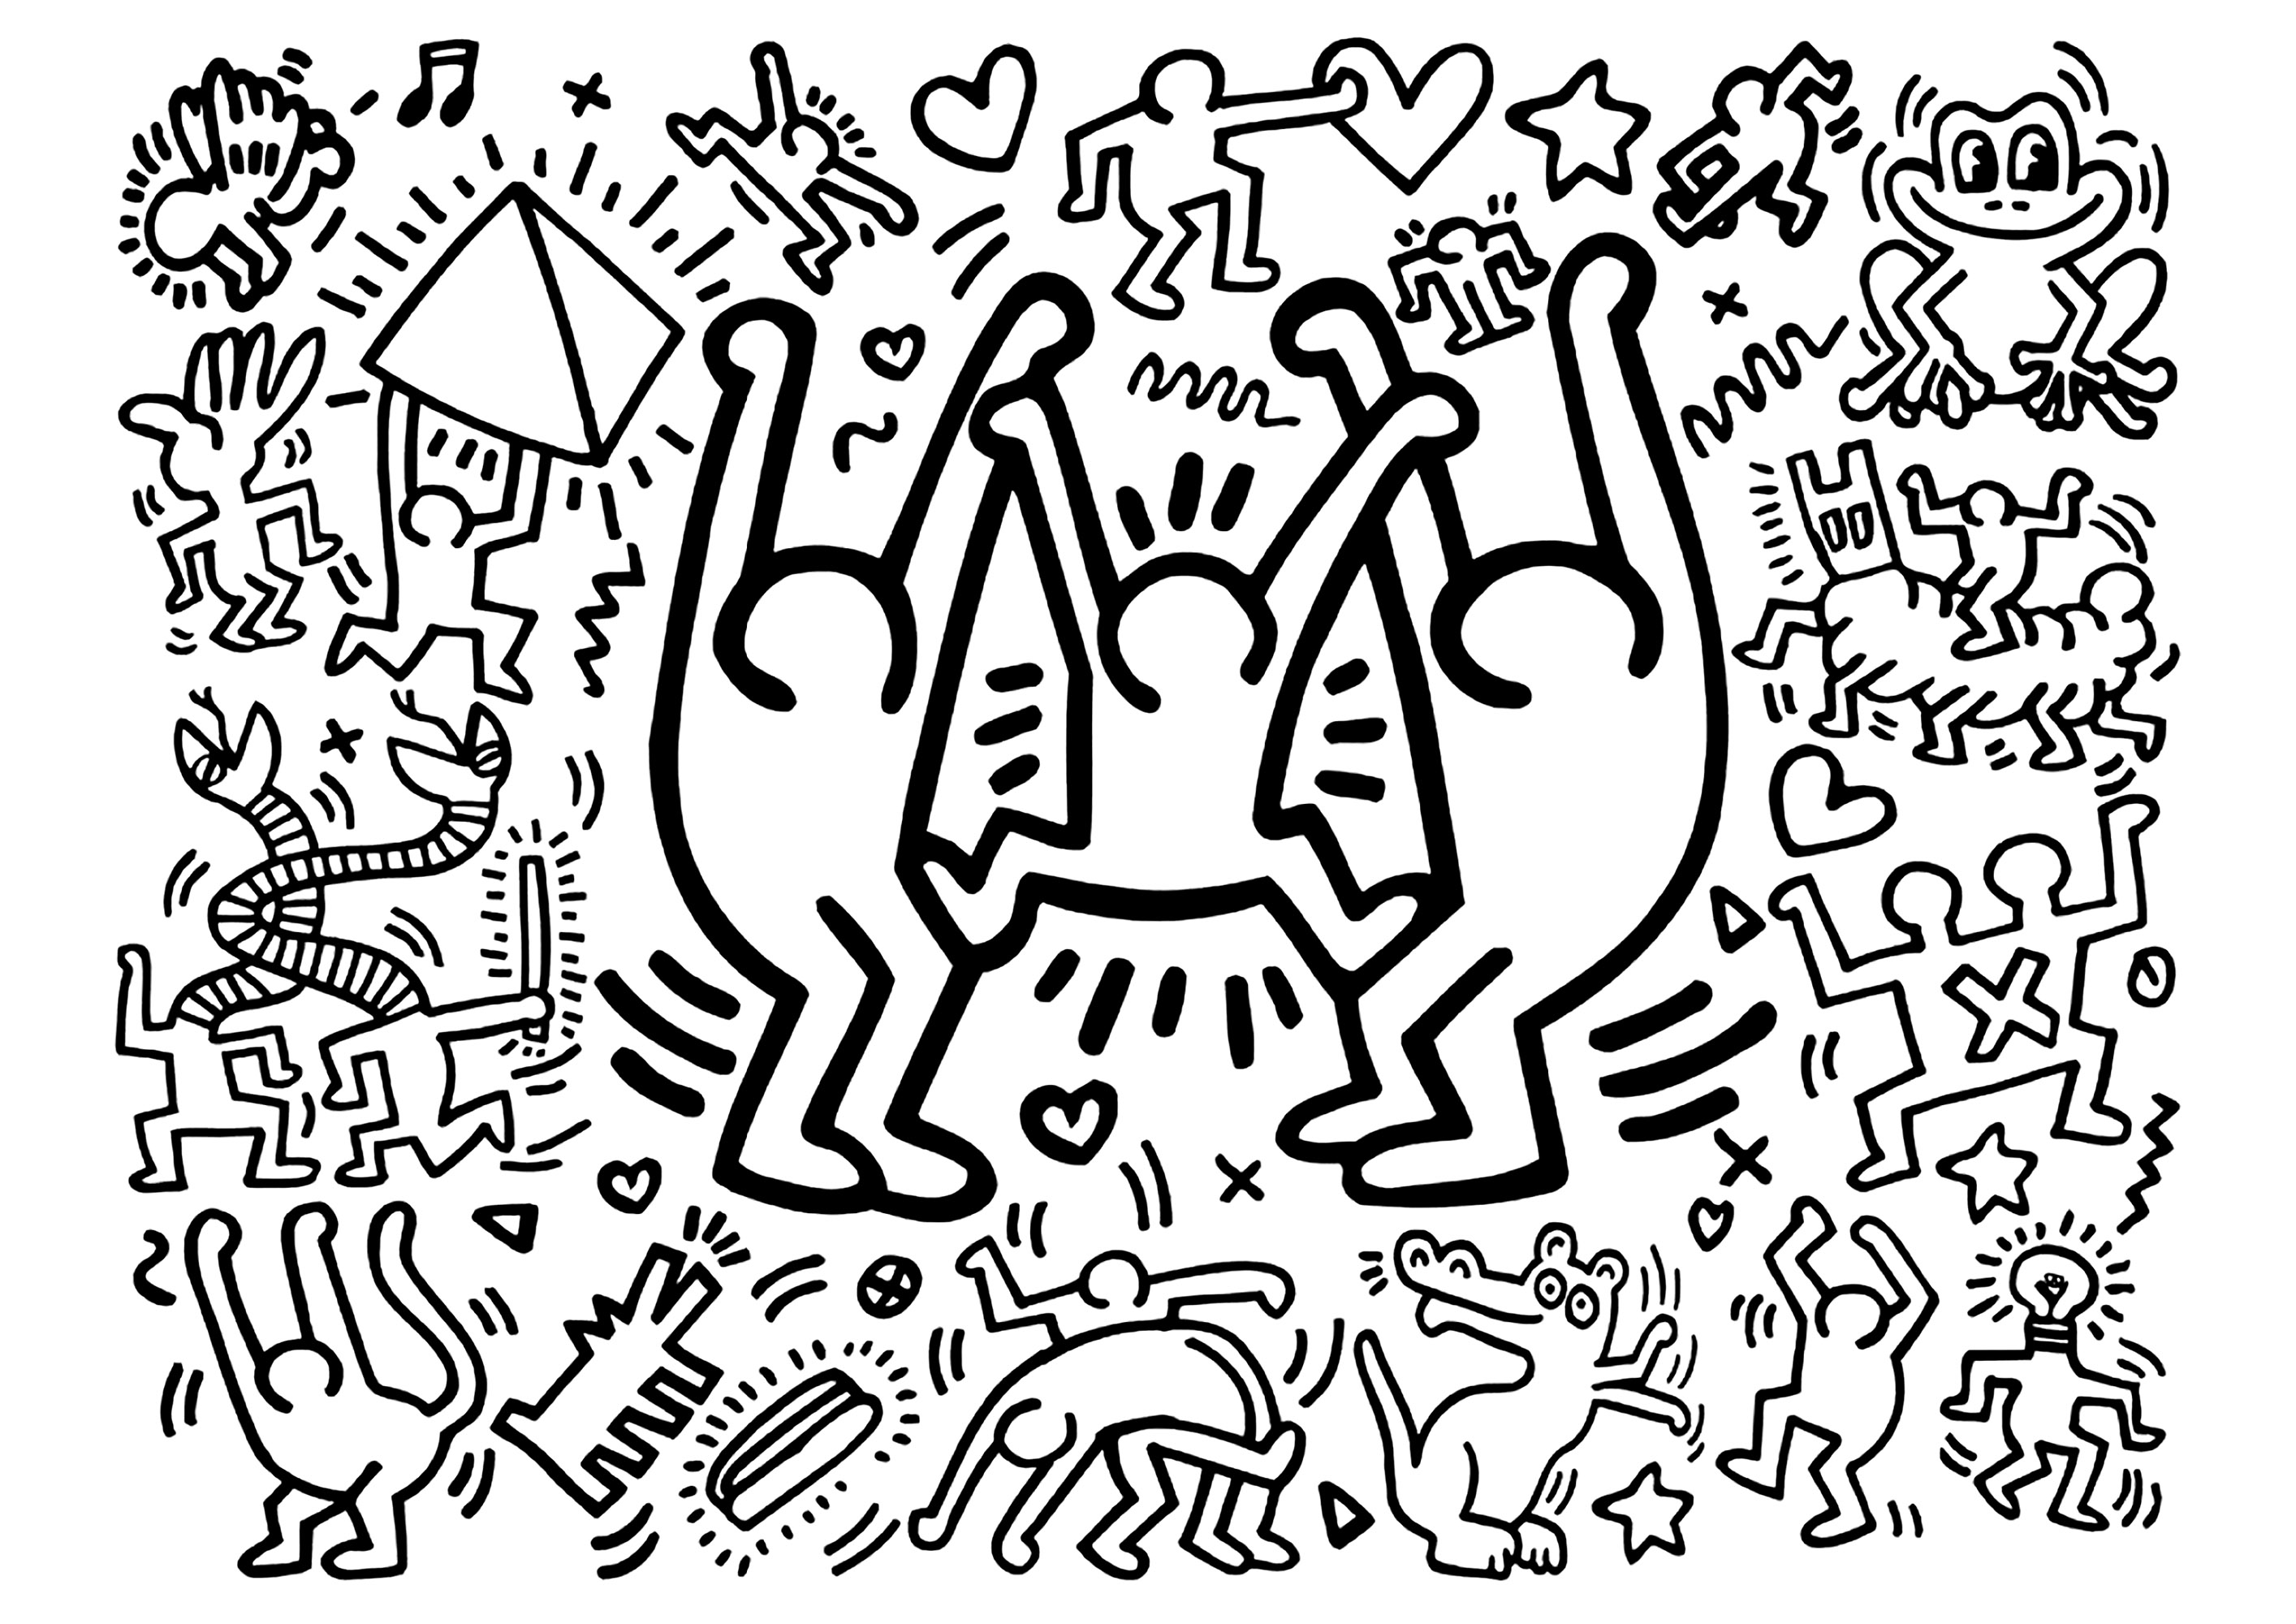 Keith Haring: Tre grandi personaggi allegri e alcuni più piccoli. Un libro da colorare basato su un'opera di Keith Haring